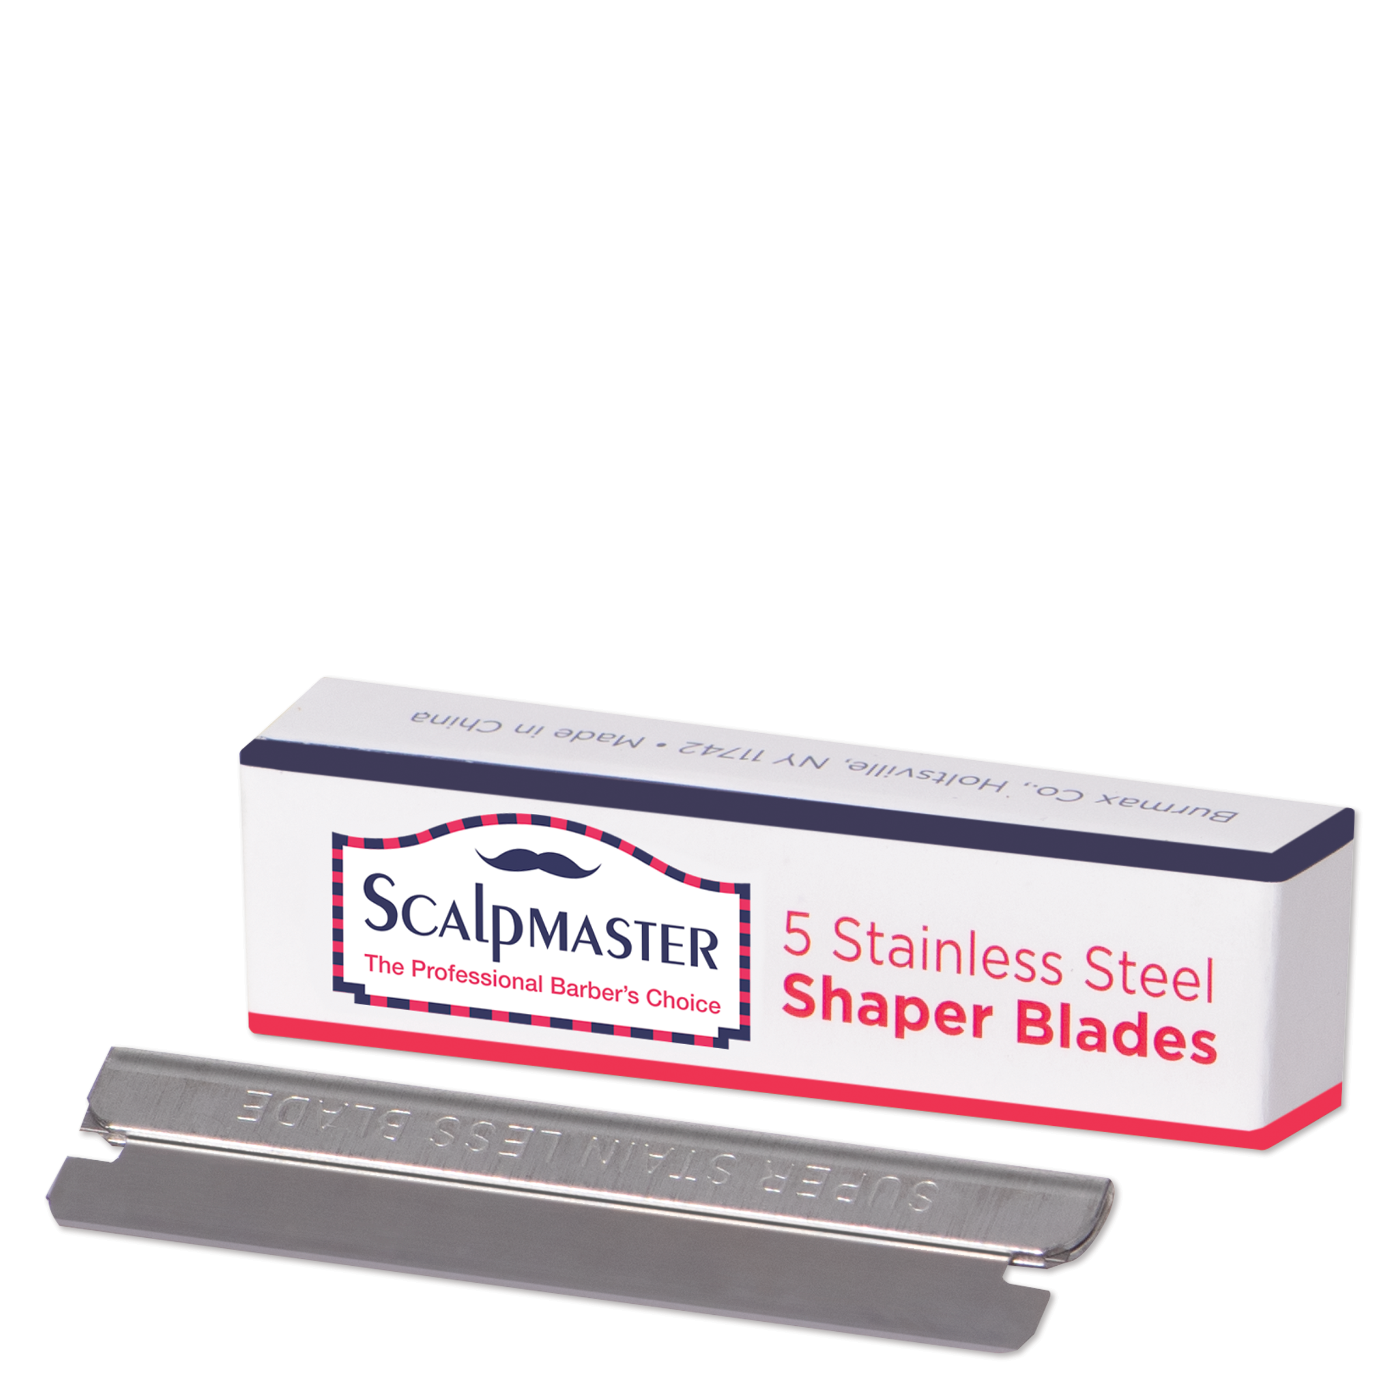 Stainless Steel Shaper Blades - 5 Blades